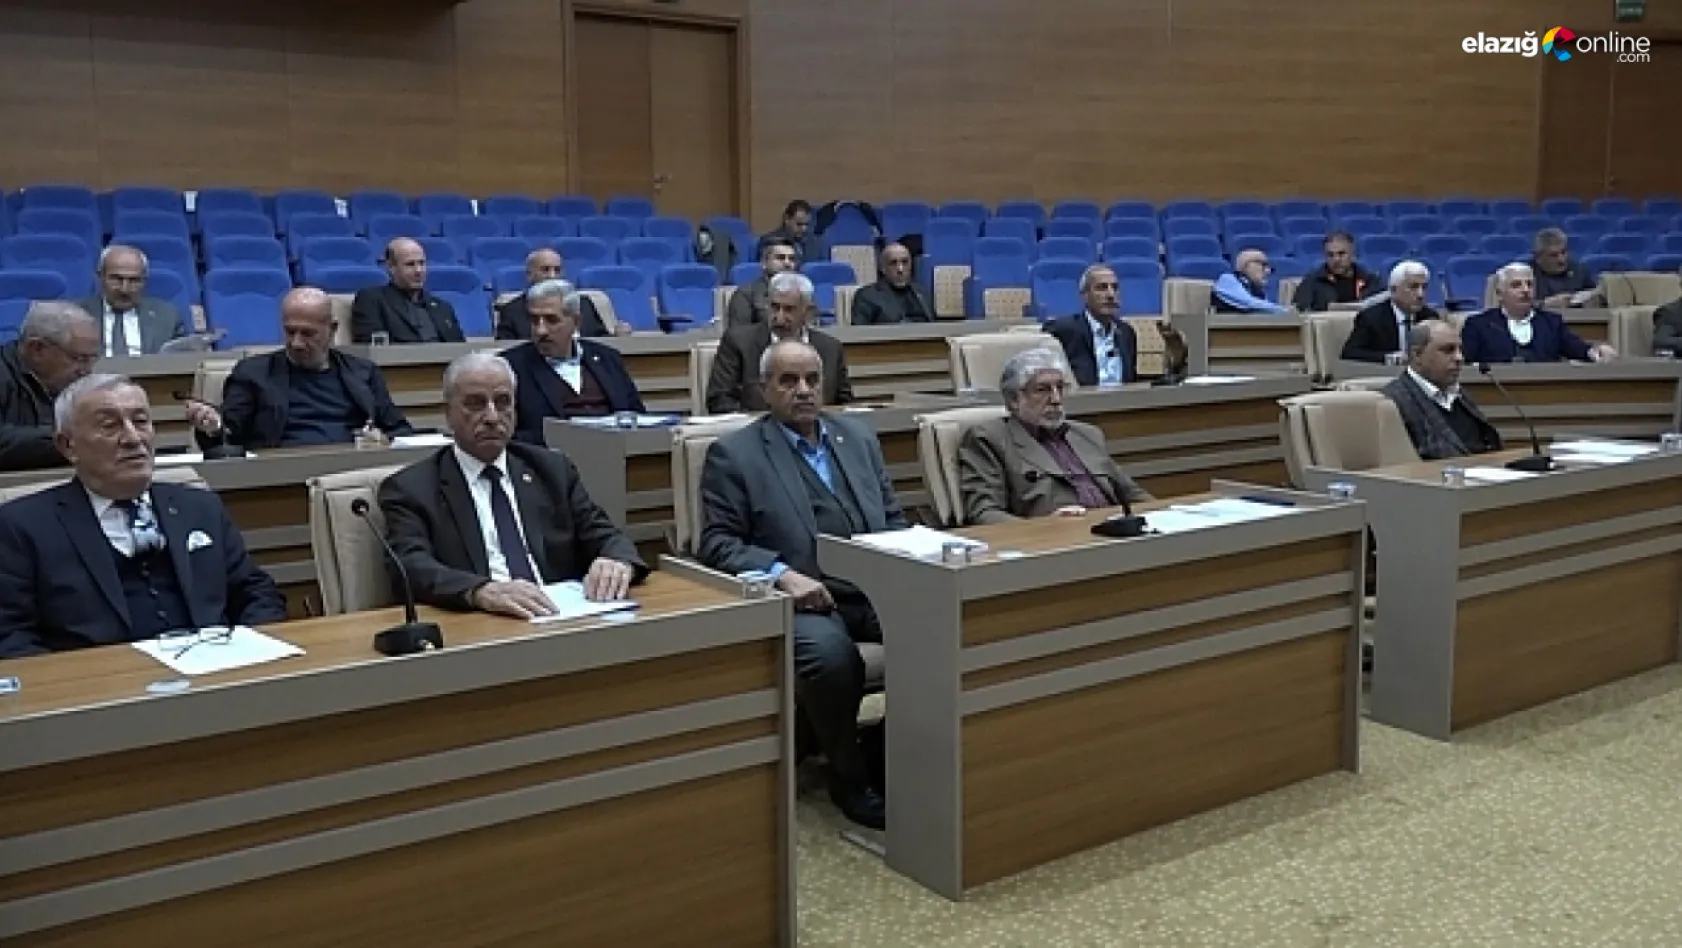 Elazığ İl Genel Meclisi kasım ayı oturumu 'maydanoz olma' polemiği ile sona erdi